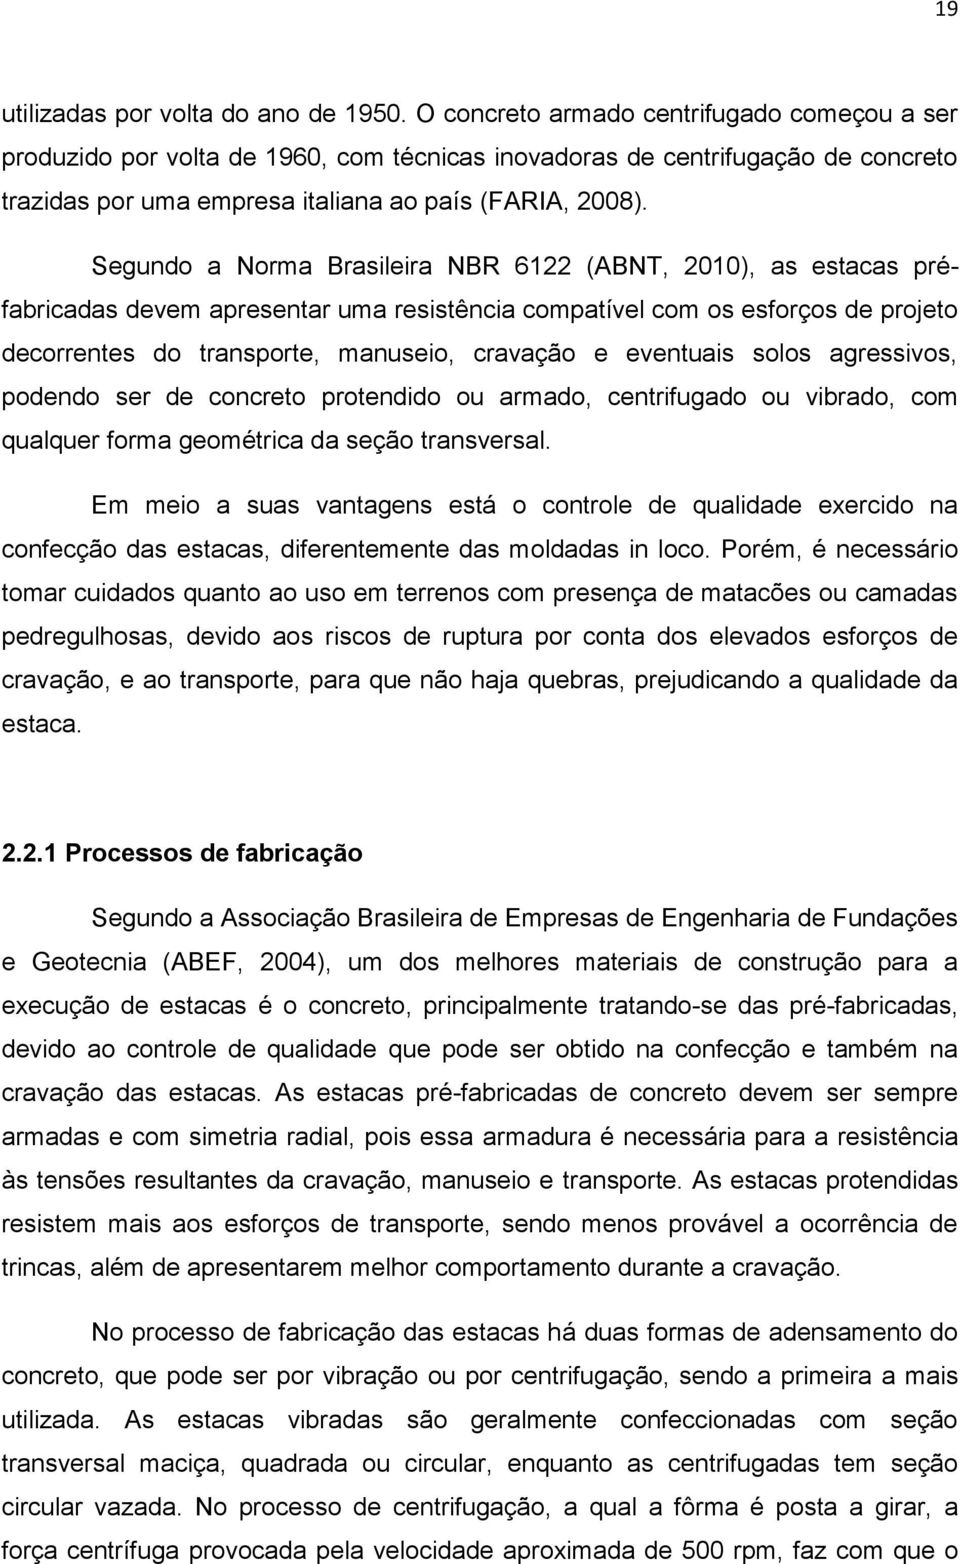 Segundo a Norma Brasileira NBR 6122 (ABNT, 2010), as estacas préfabricadas devem apresentar uma resistência compatível com os esforços de projeto decorrentes do transporte, manuseio, cravação e